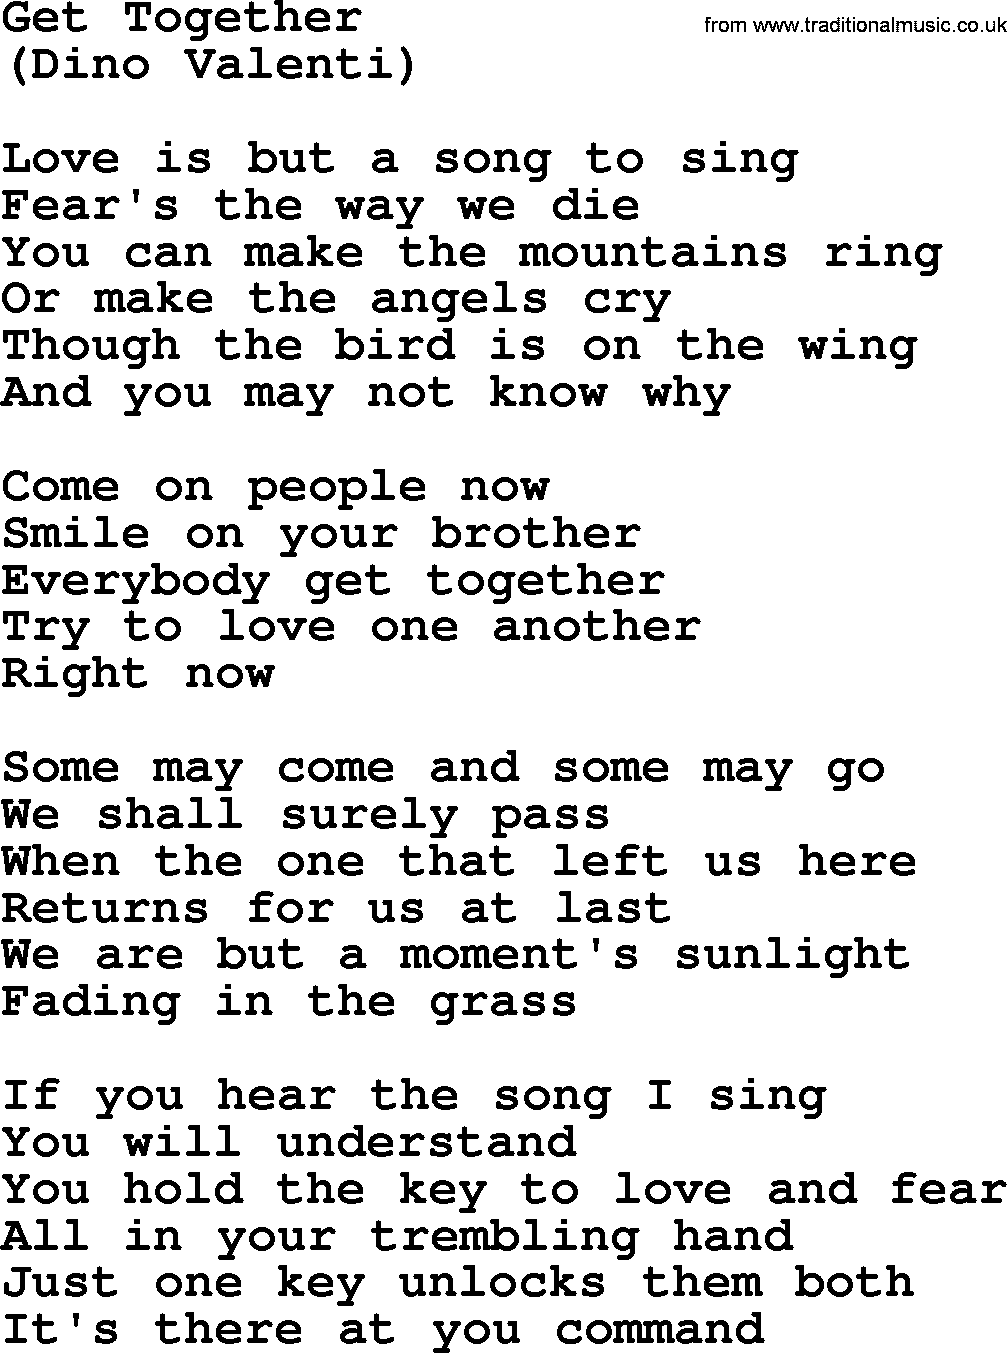 The Byrds song Get Together, lyrics